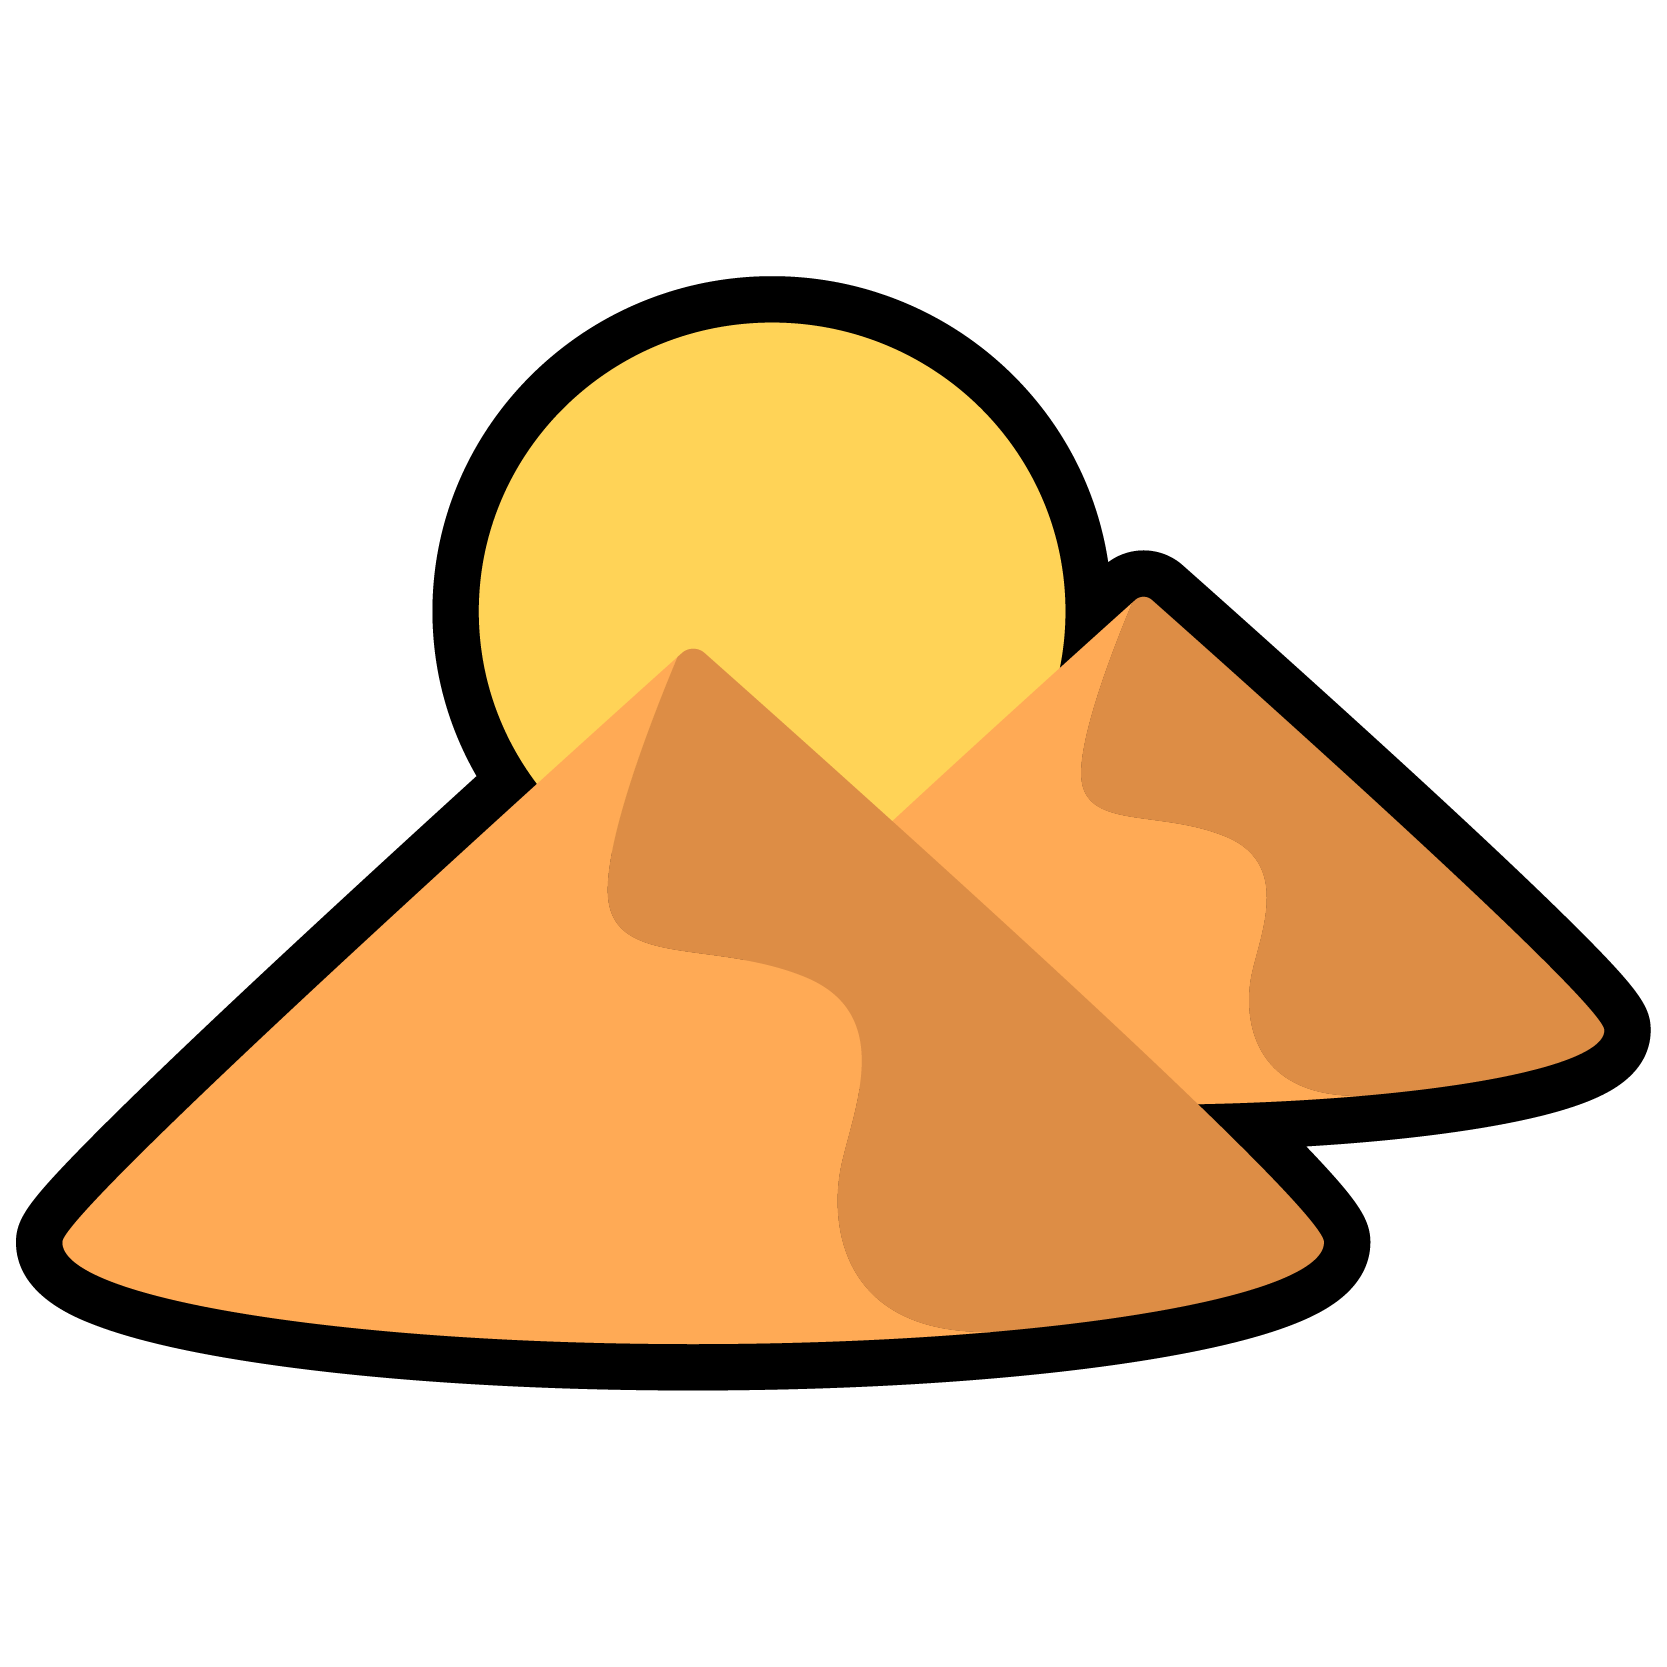 Sand dunes icon